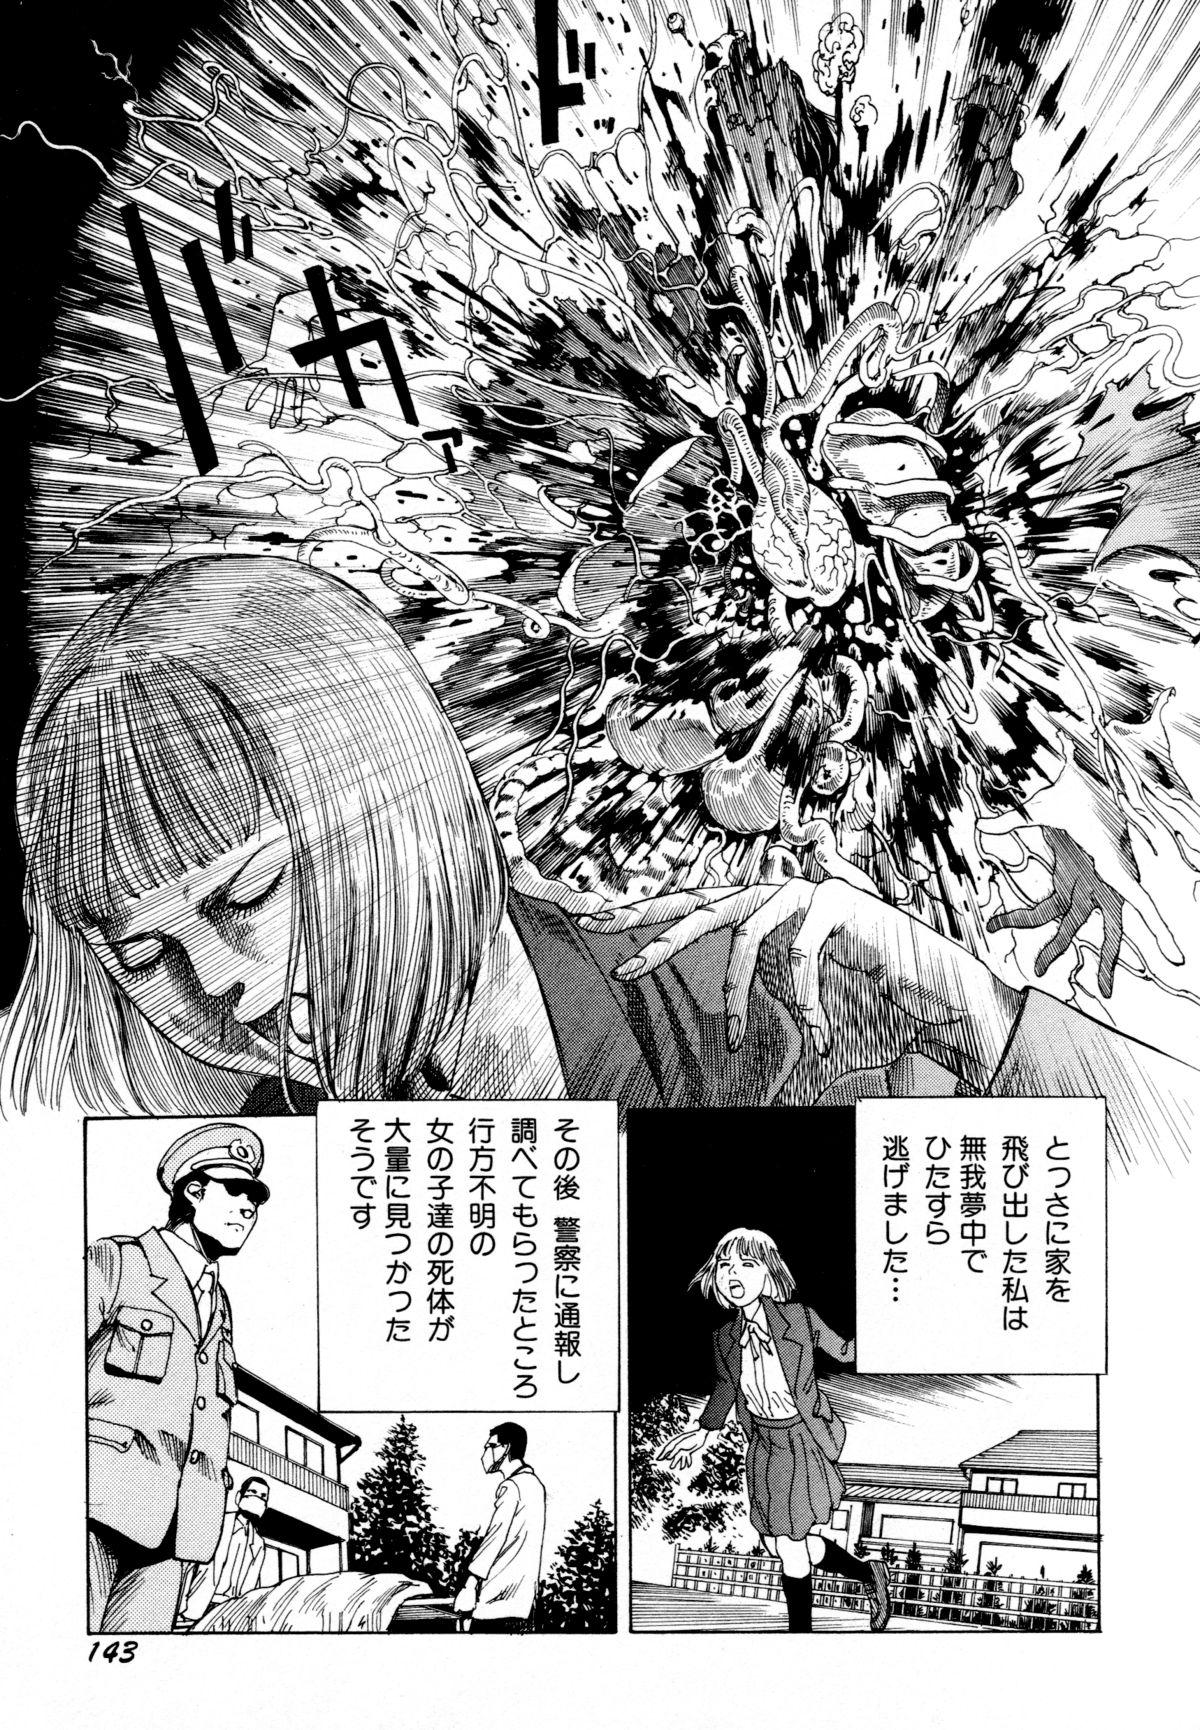 Arijigoku vs Barabara Shoujo - Antlion vs BaraBara Girl 144